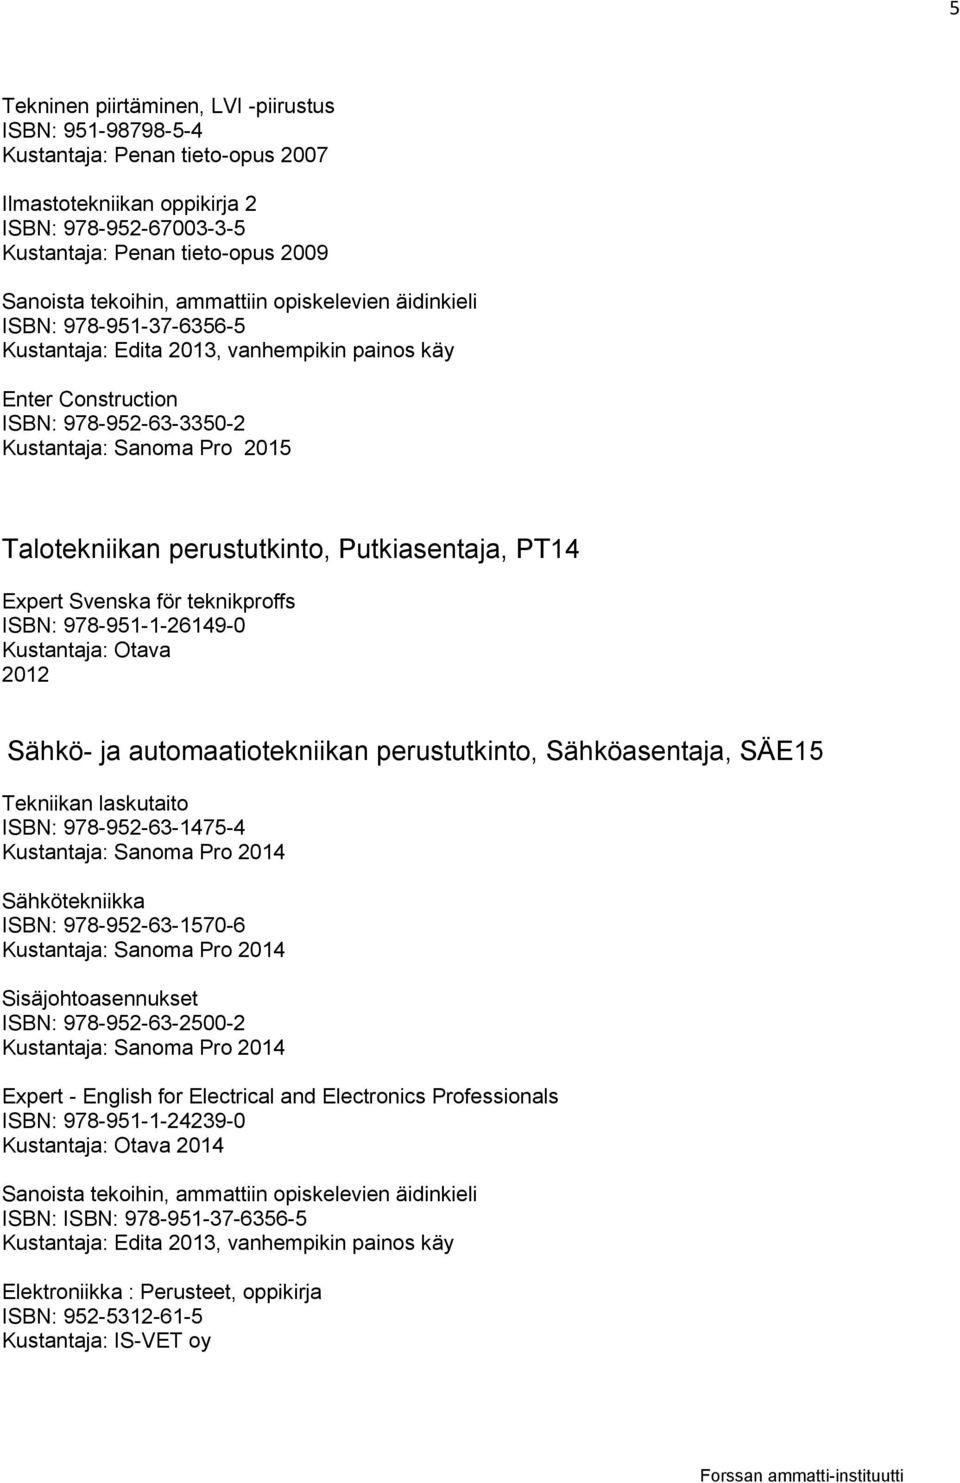 Expert Svenska för teknikproffs Kustantaja: Otava 2012 Sähkö- ja automaatiotekniikan perustutkinto, Sähköasentaja, SÄE15 Tekniikan laskutaito ISBN: 978-952-63-1475-4 Sähkötekniikka ISBN: